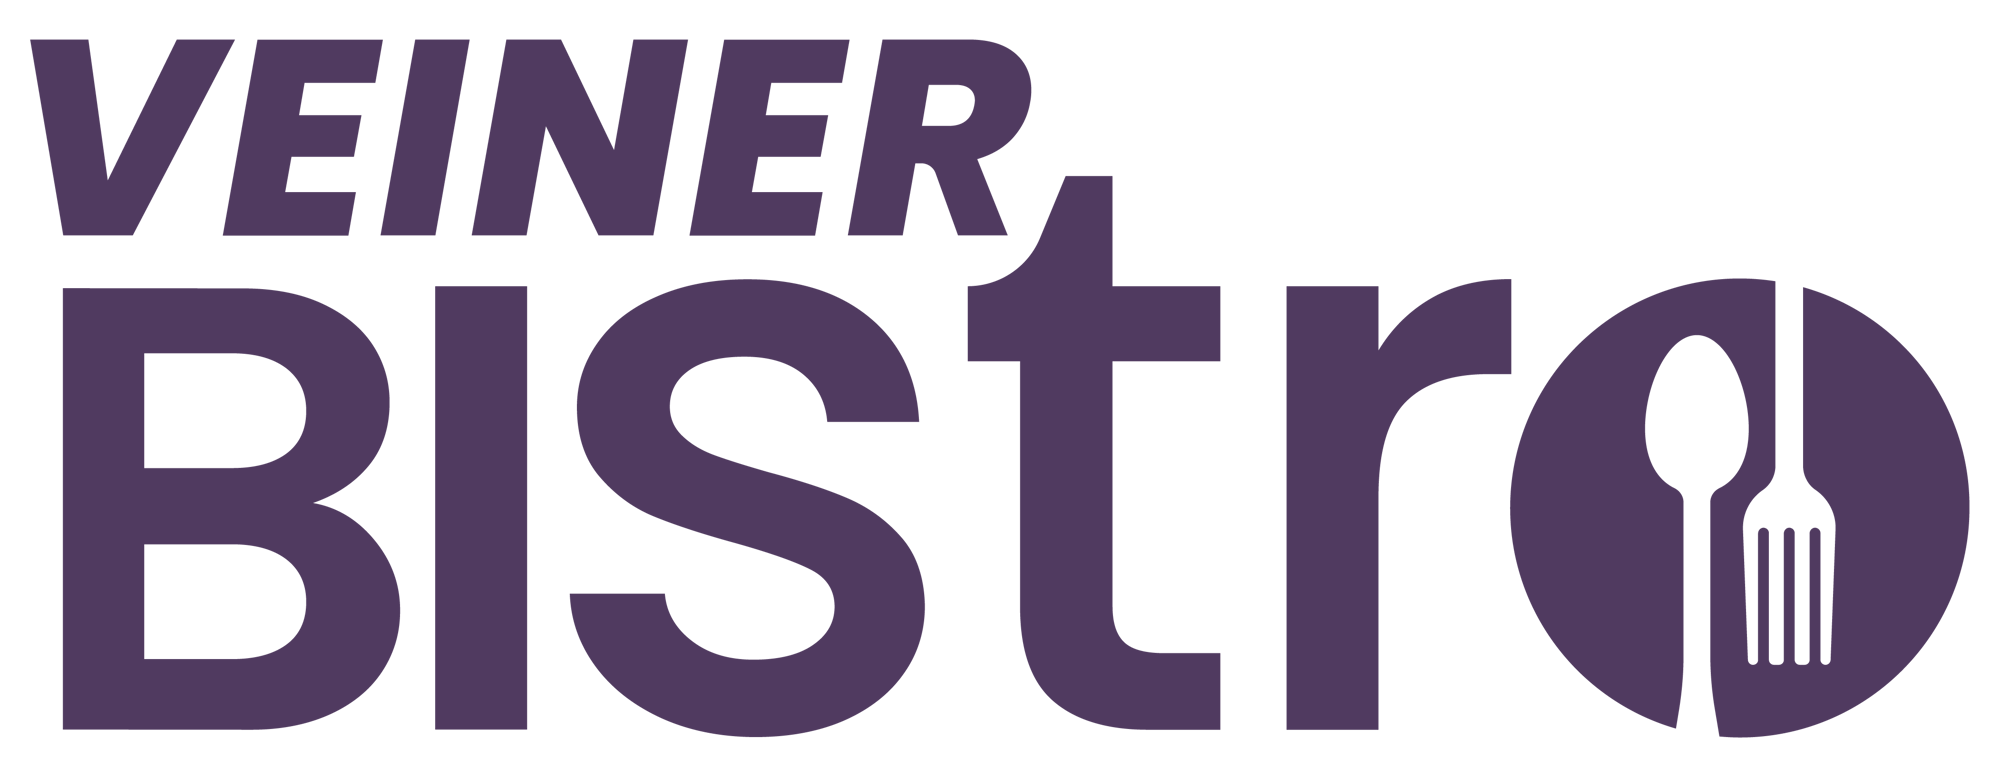 Veiner Bistro Logo Colour-01